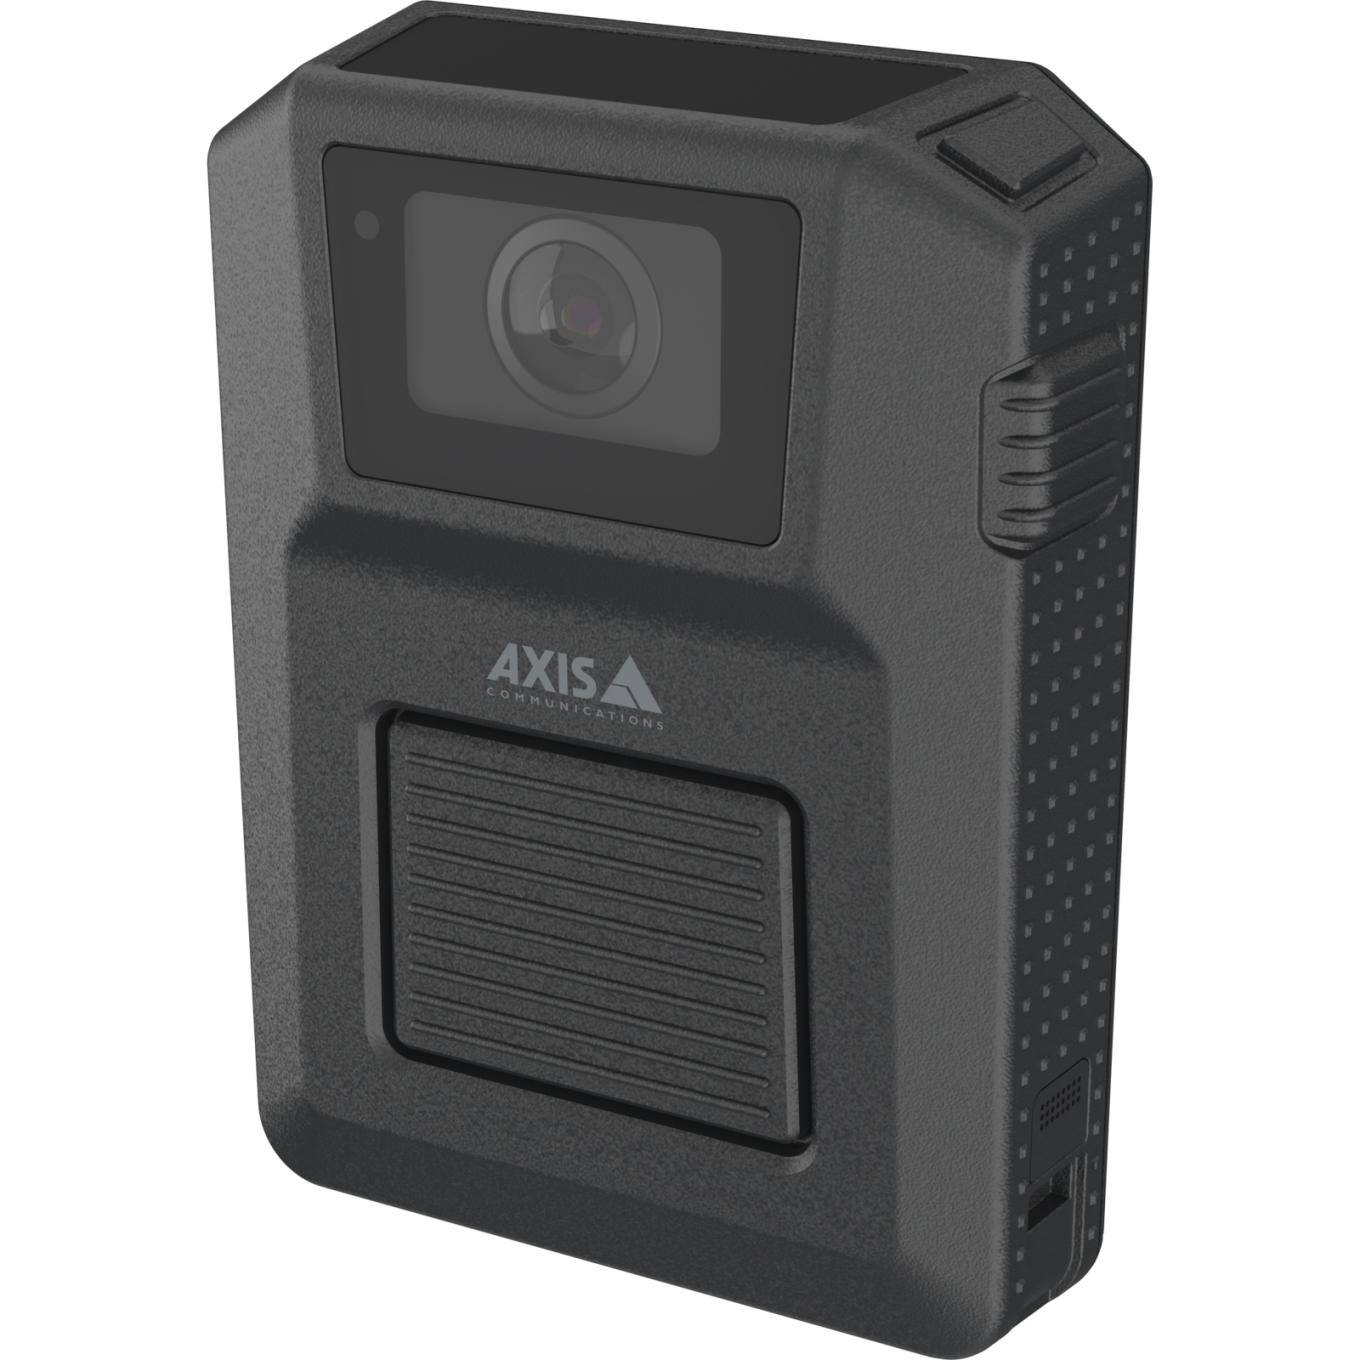 AXIS W102 Body Worn Camera en color negro, vista desde su ángulo izquierdo